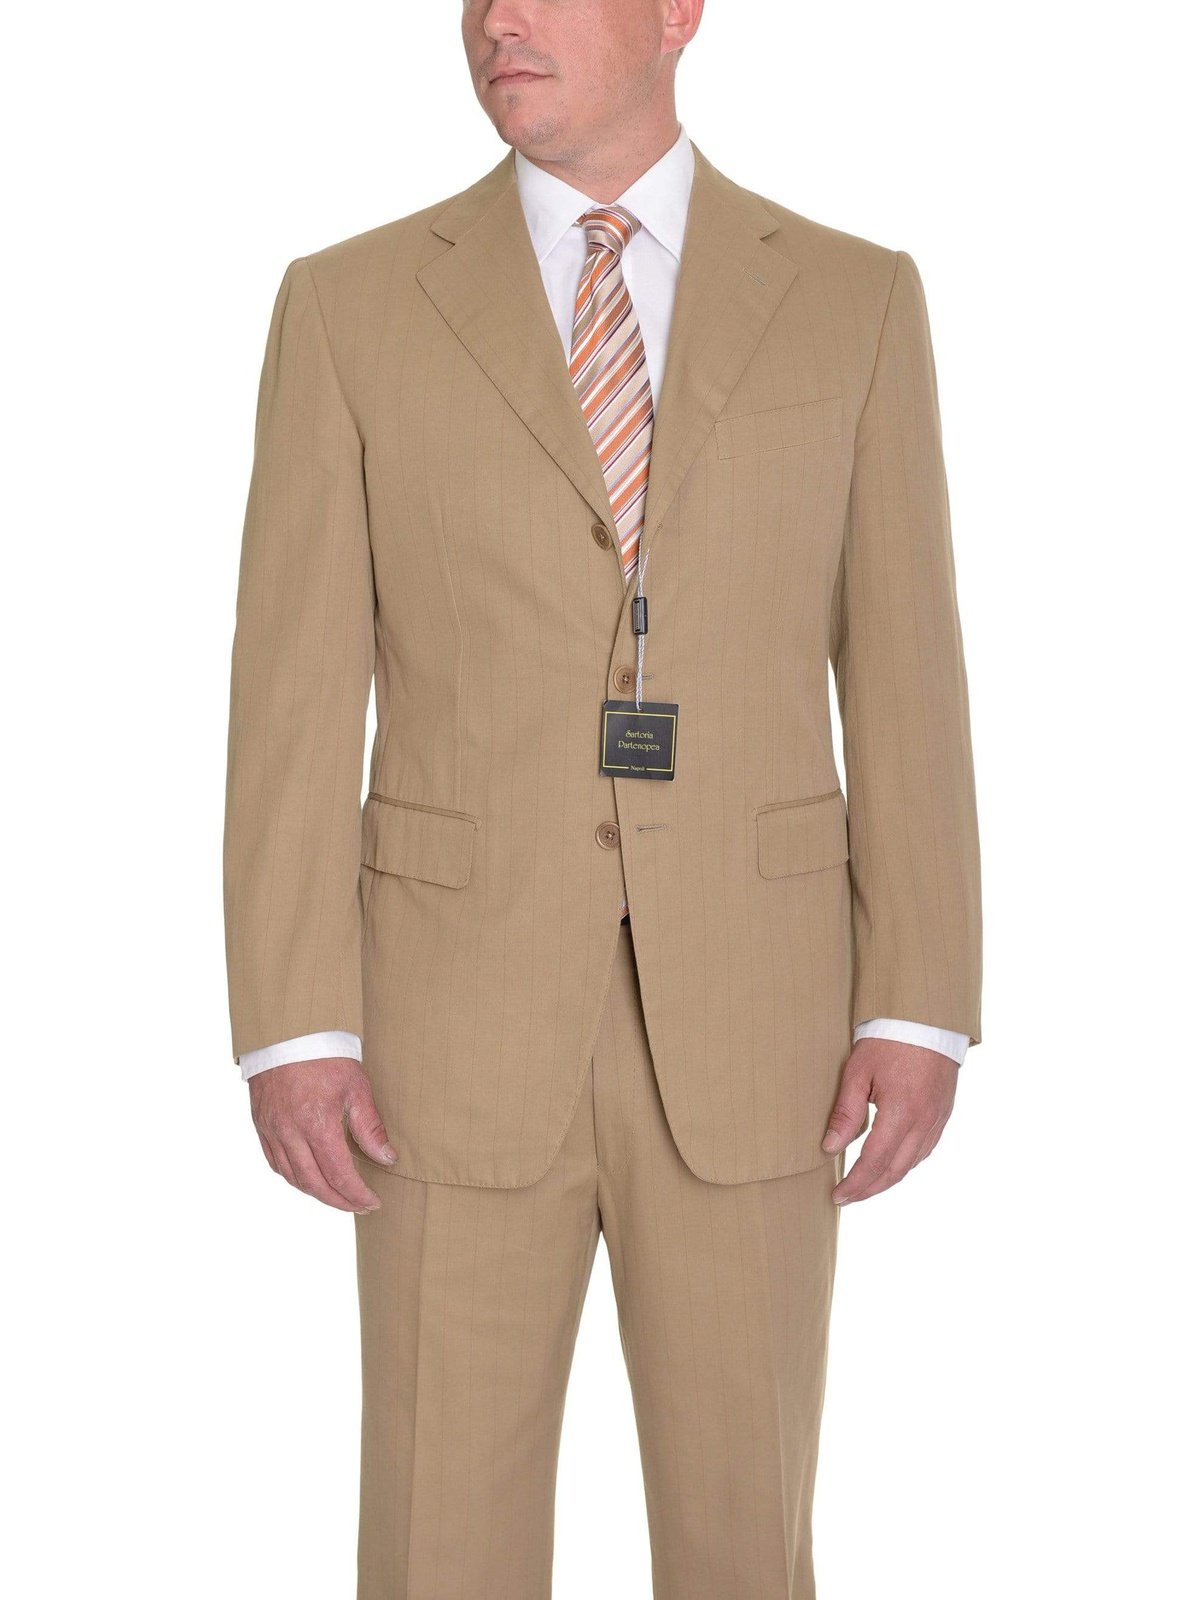 Sartoria Partenopea 40R 50 Tan Striped Unlined Cotton Cashmere Suit - The Suit Depot